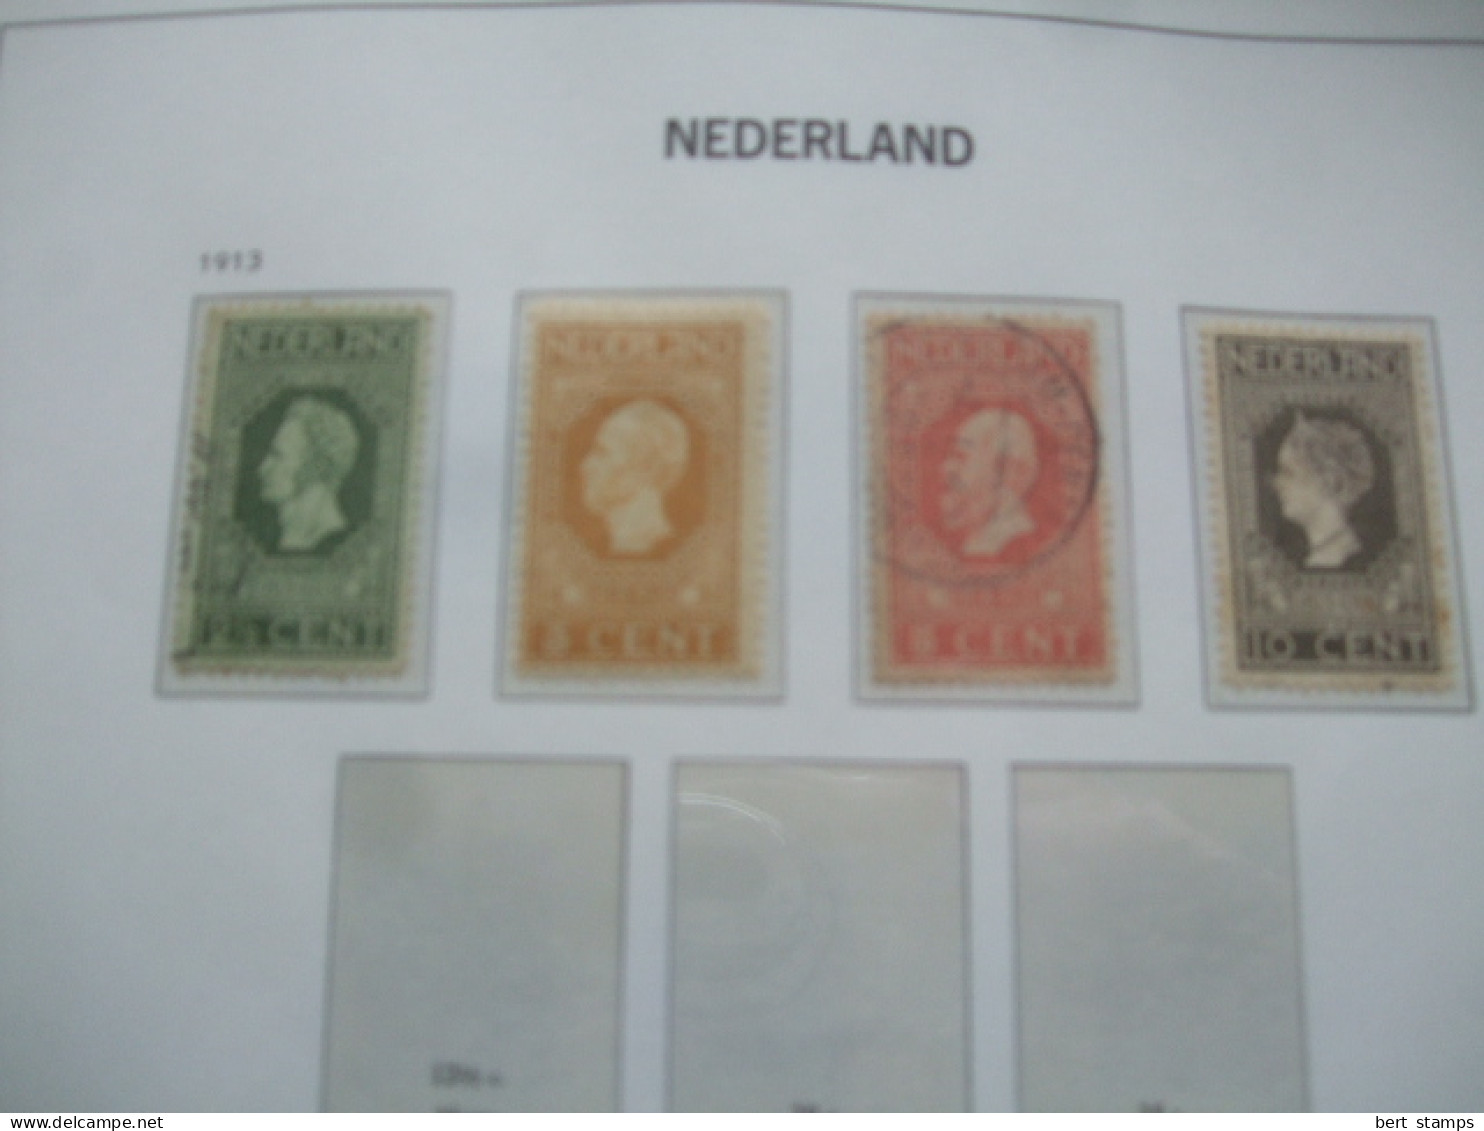 Nederland, Netherlands Collection in DAVO album. (opbrengst gaat naar KIKA)